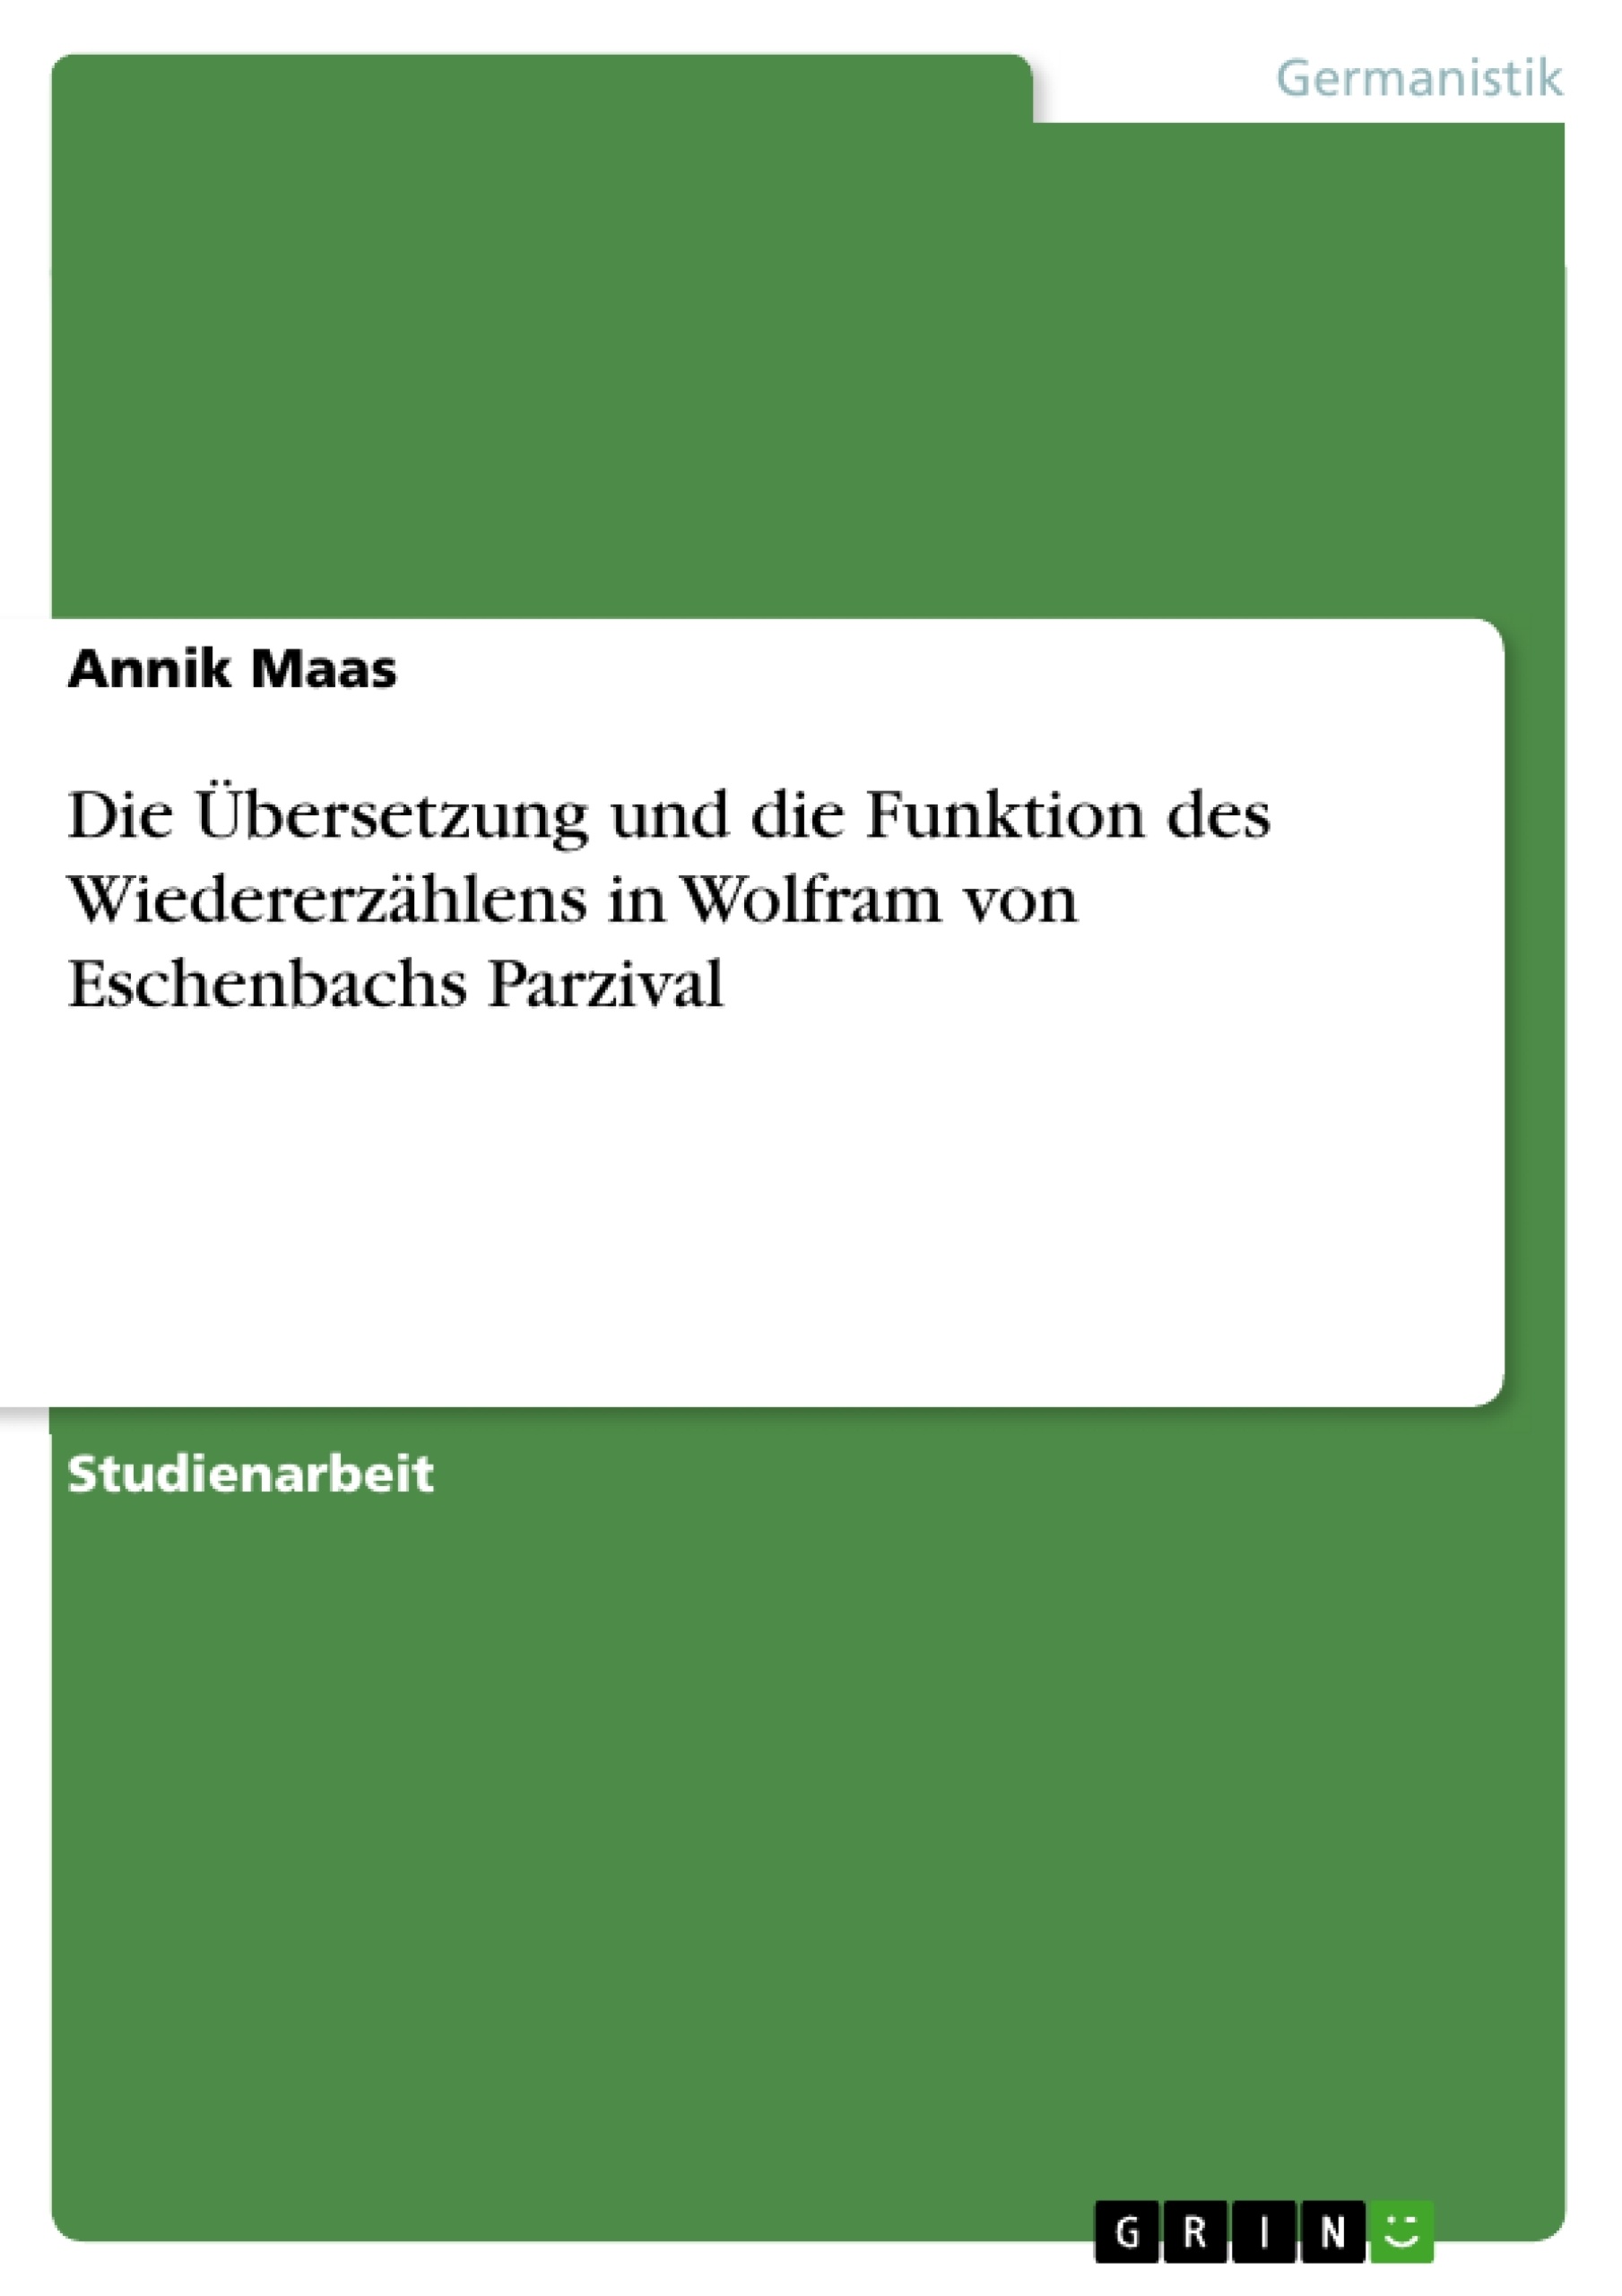 Title: Die Übersetzung und die Funktion des Wiedererzählens in Wolfram von Eschenbachs Parzival